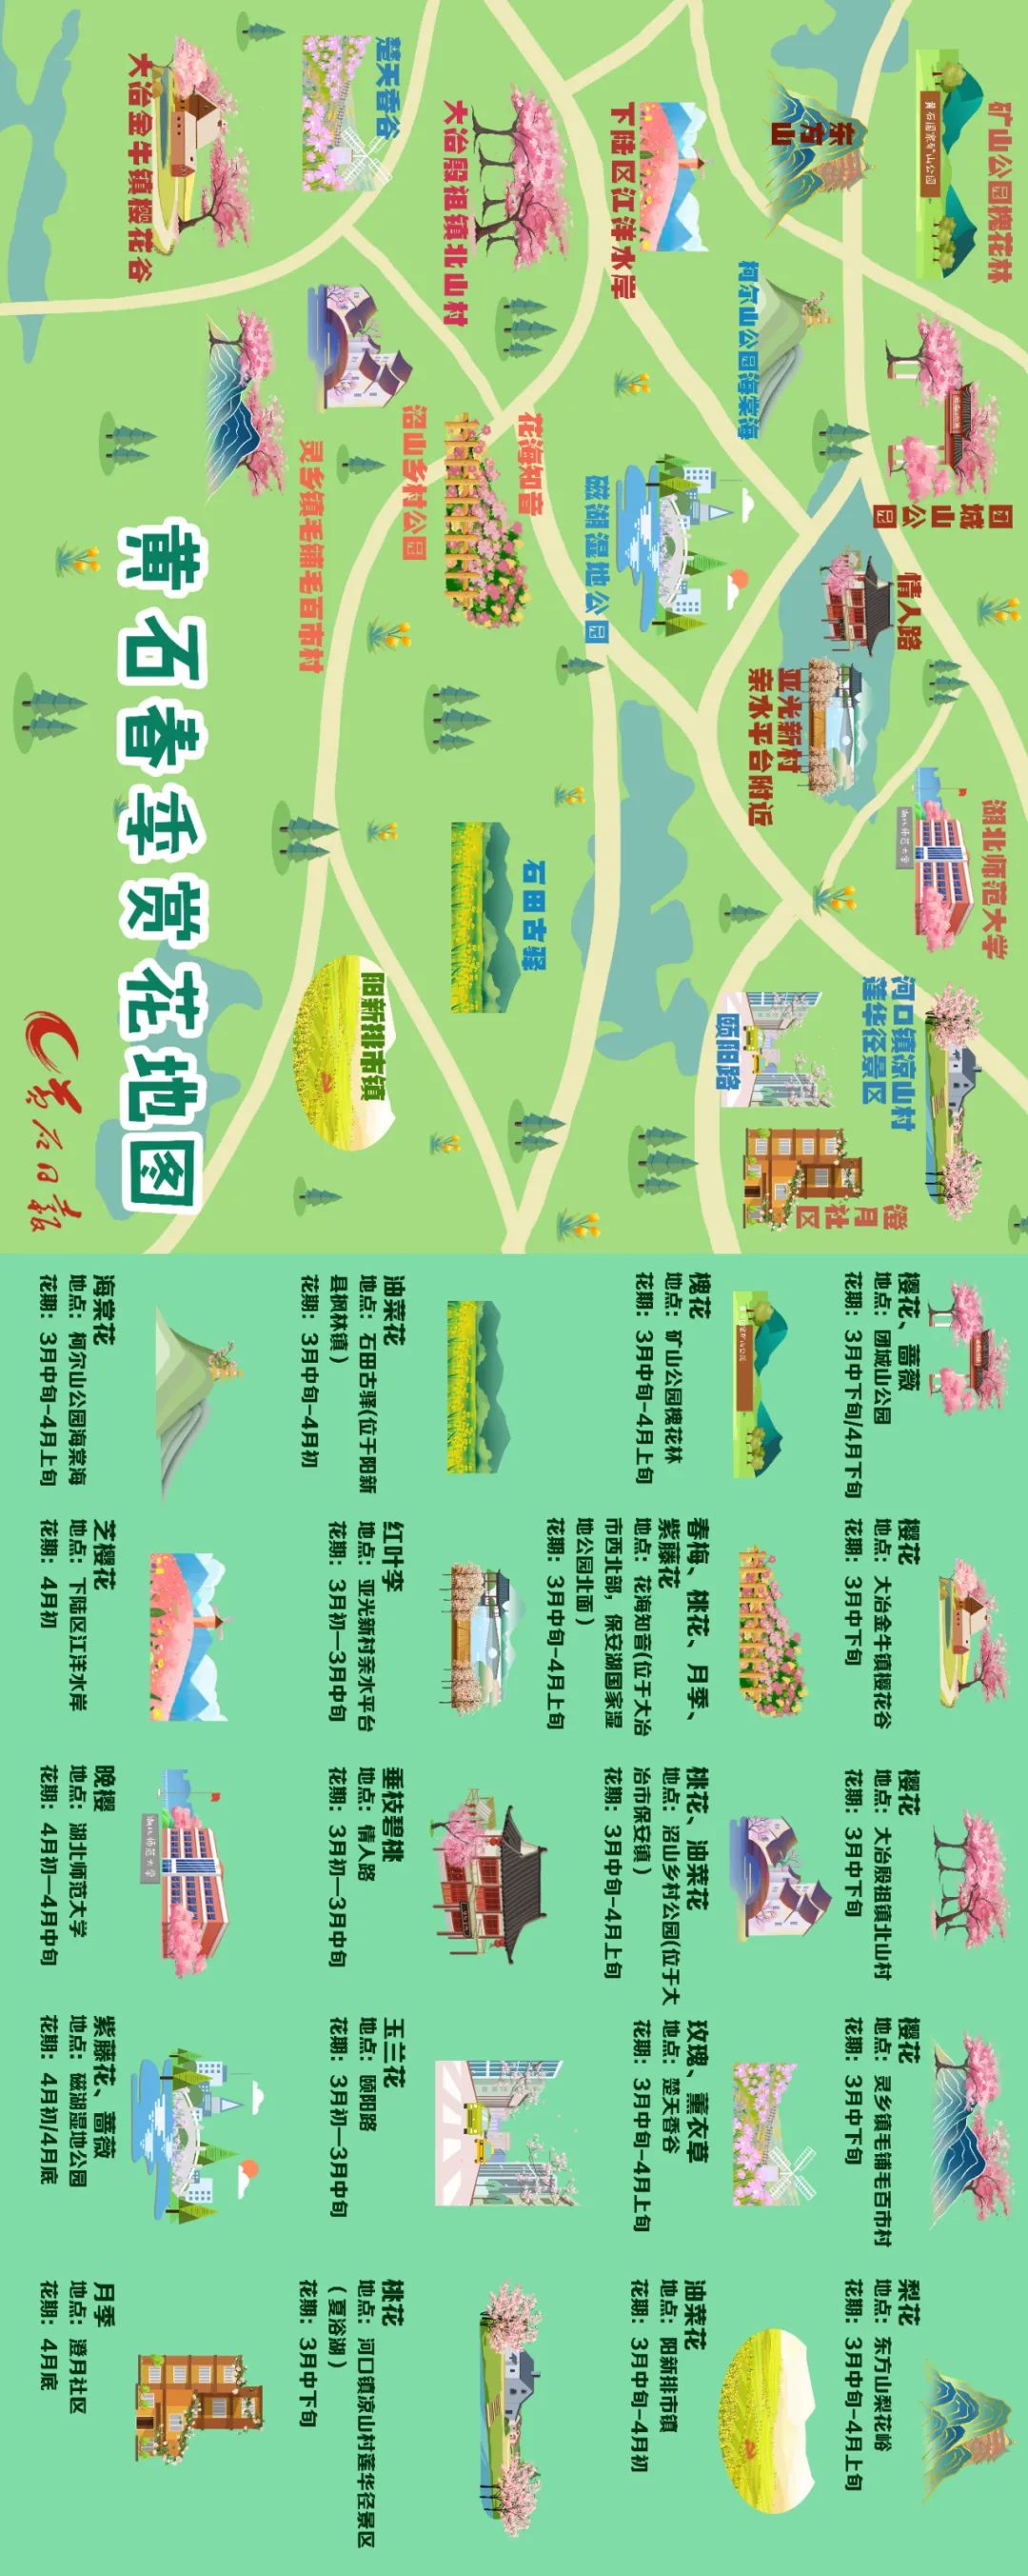 4月25日，州文广旅局发布“延边赏花地图”，邀请五一假期来延旅游的游客走进花丛，相约一场浪漫的花事。